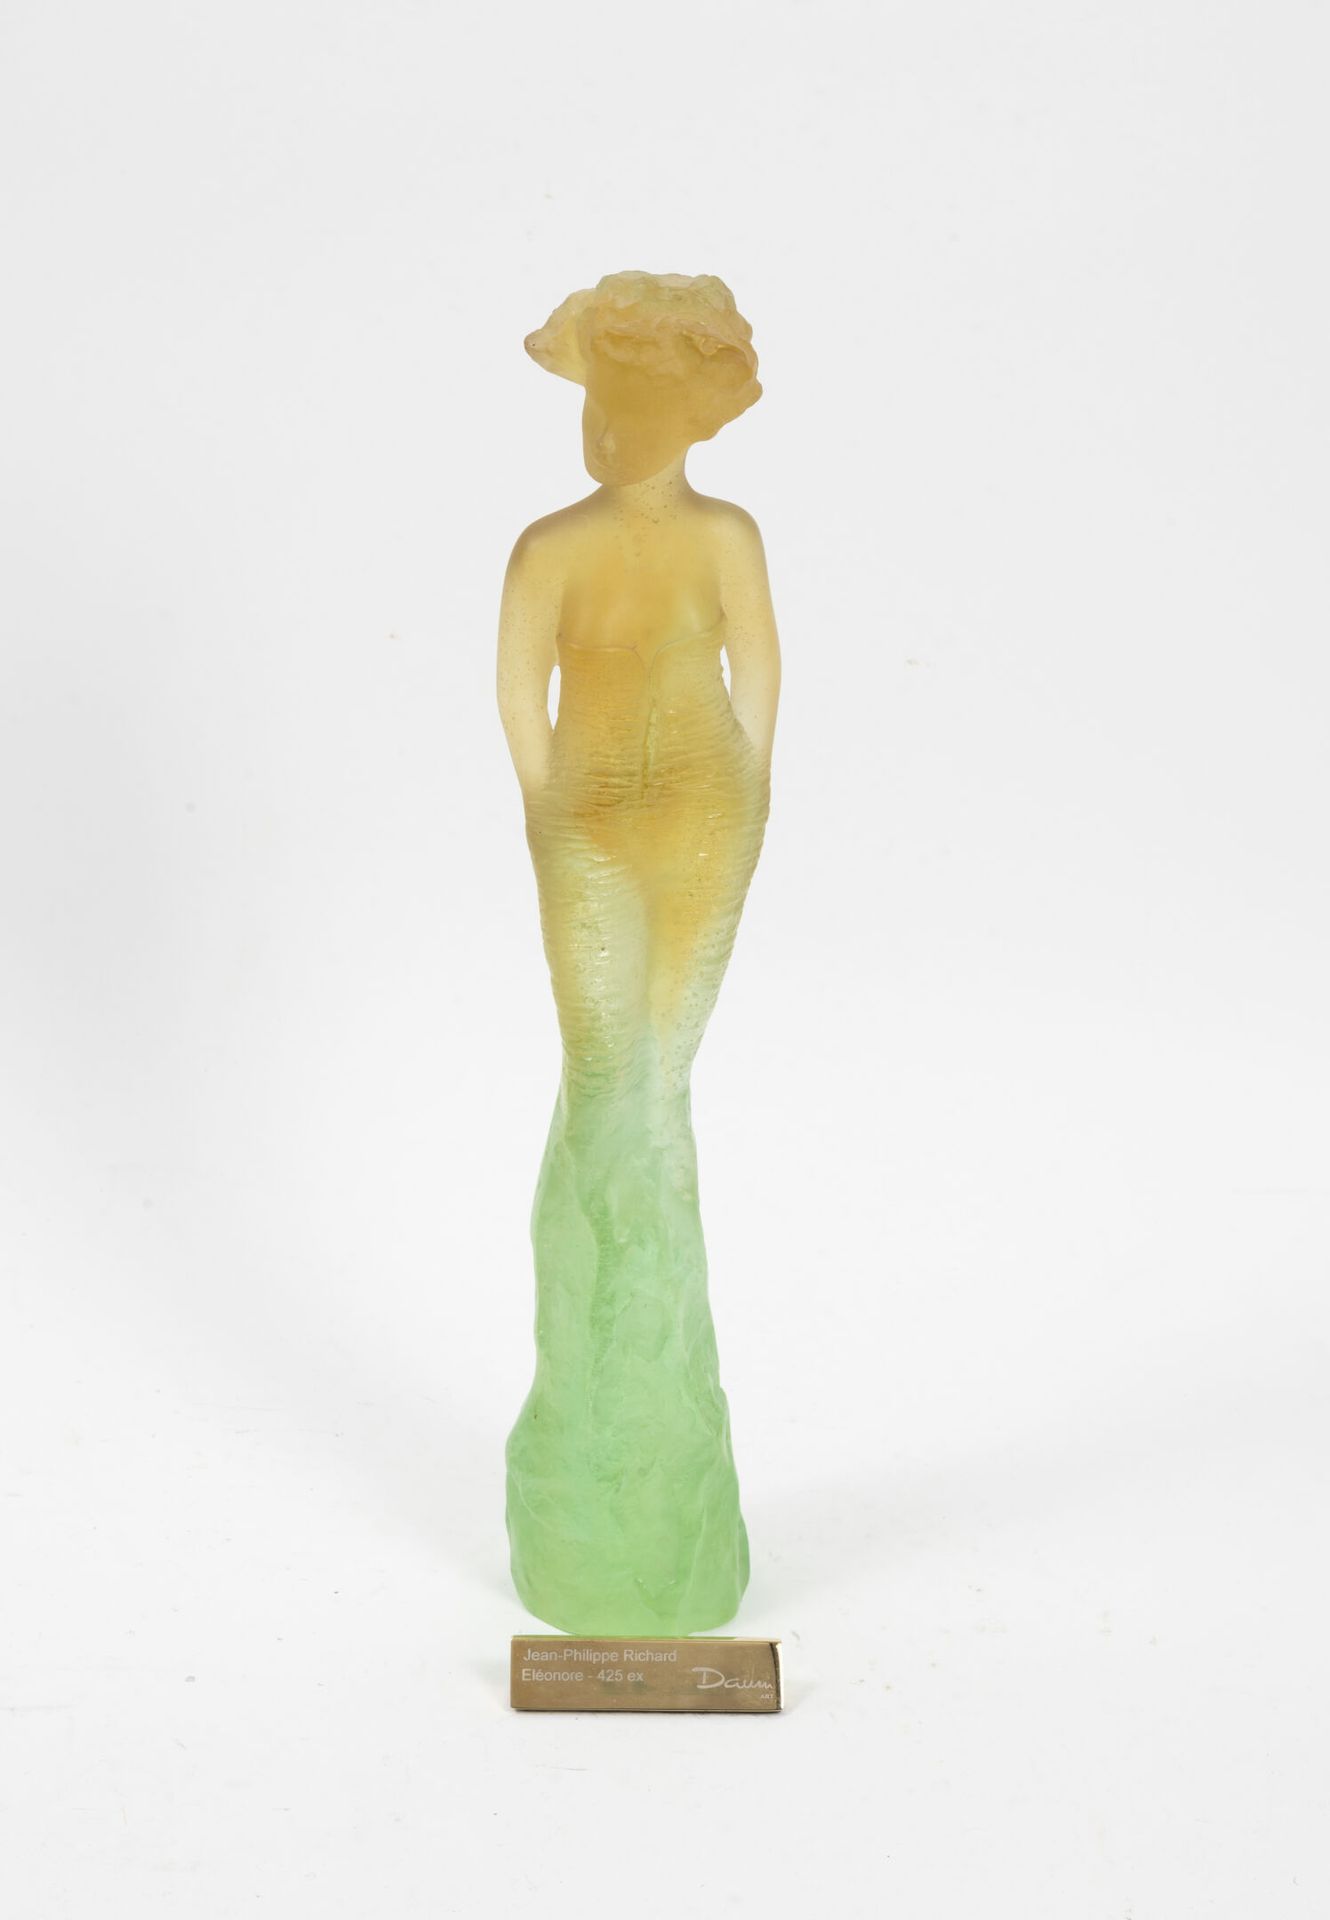 Jean Philippe RICHARD (1947) pour DAUM Eleonore.

Skulptur aus gelber und grüner&hellip;